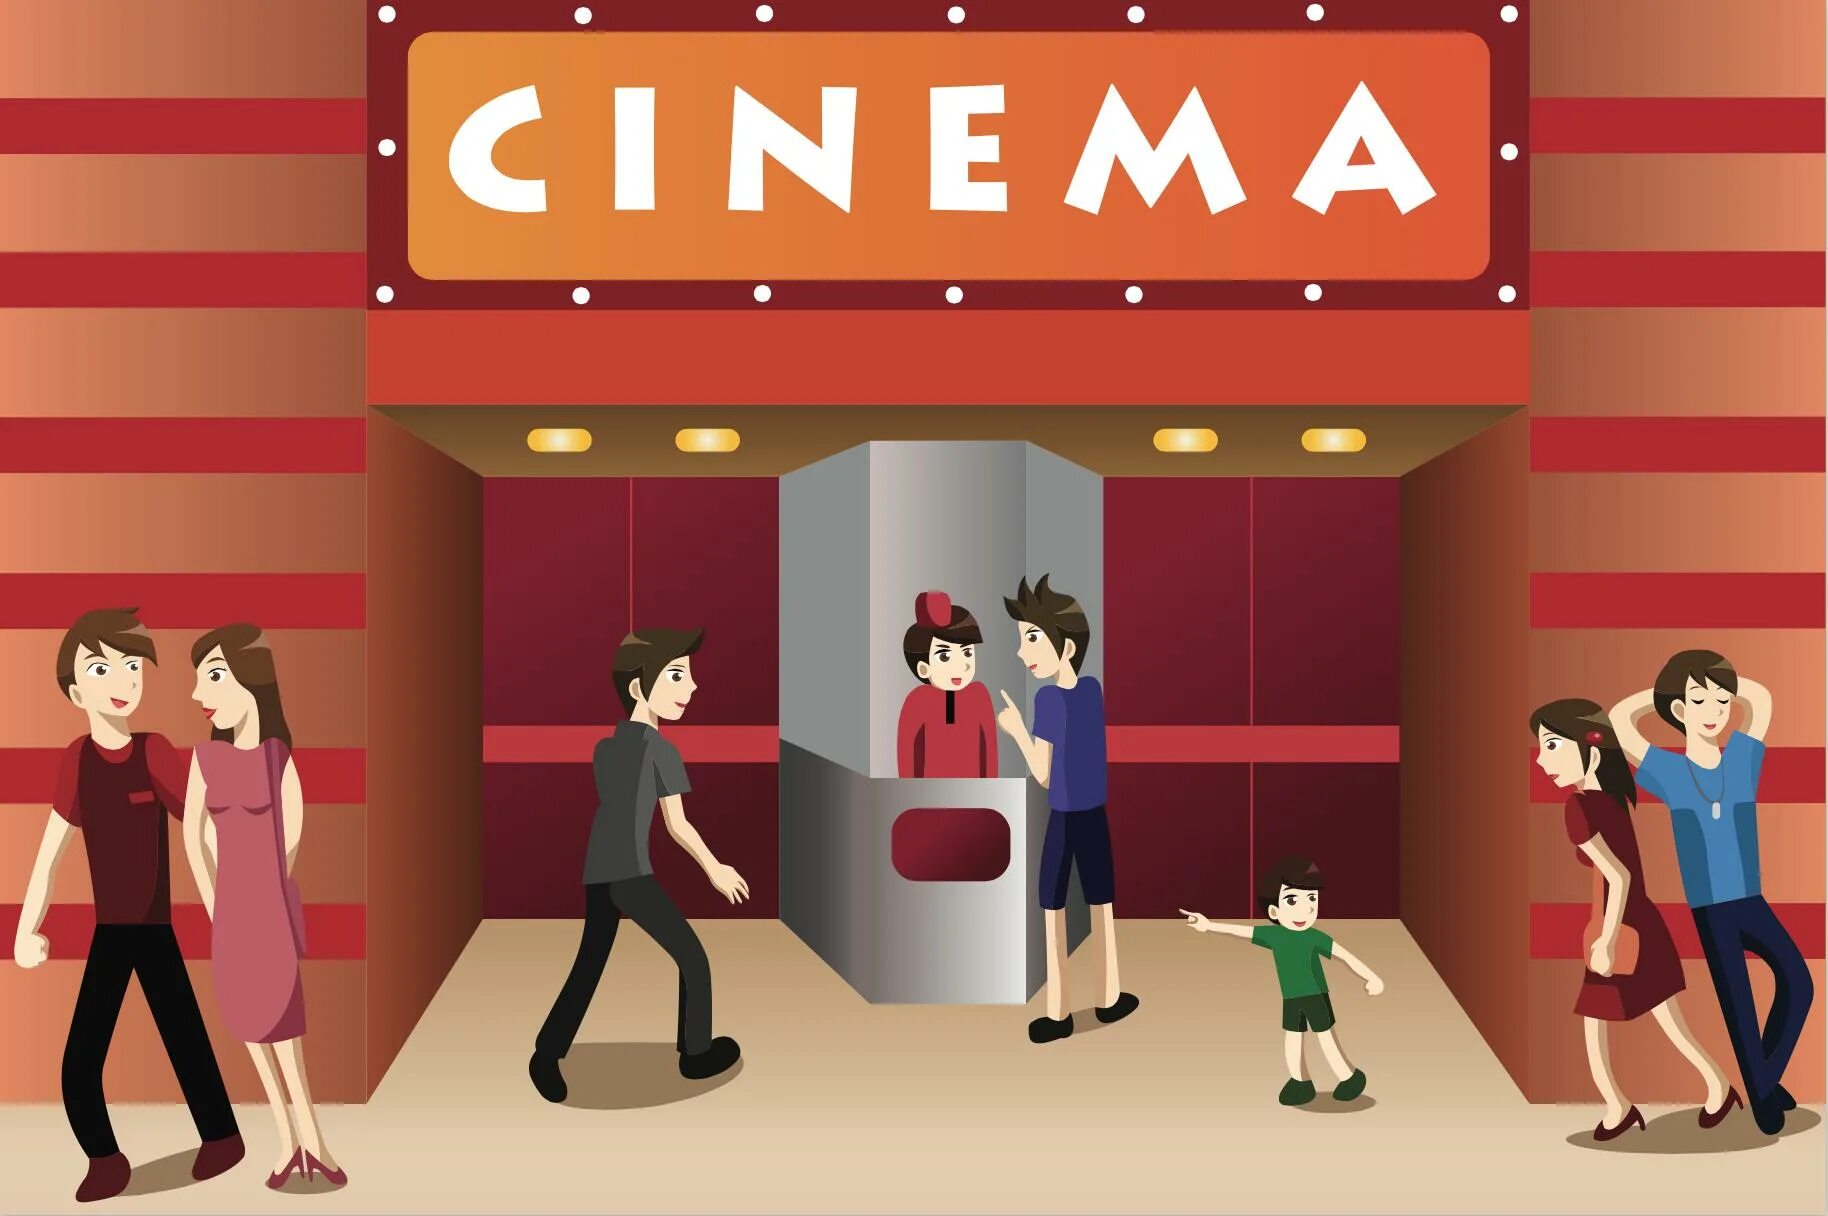 The always go to cinema. Cinema картина для детей. Дети идут в кинотеатр рисунок. Кинотеатр рисунок.